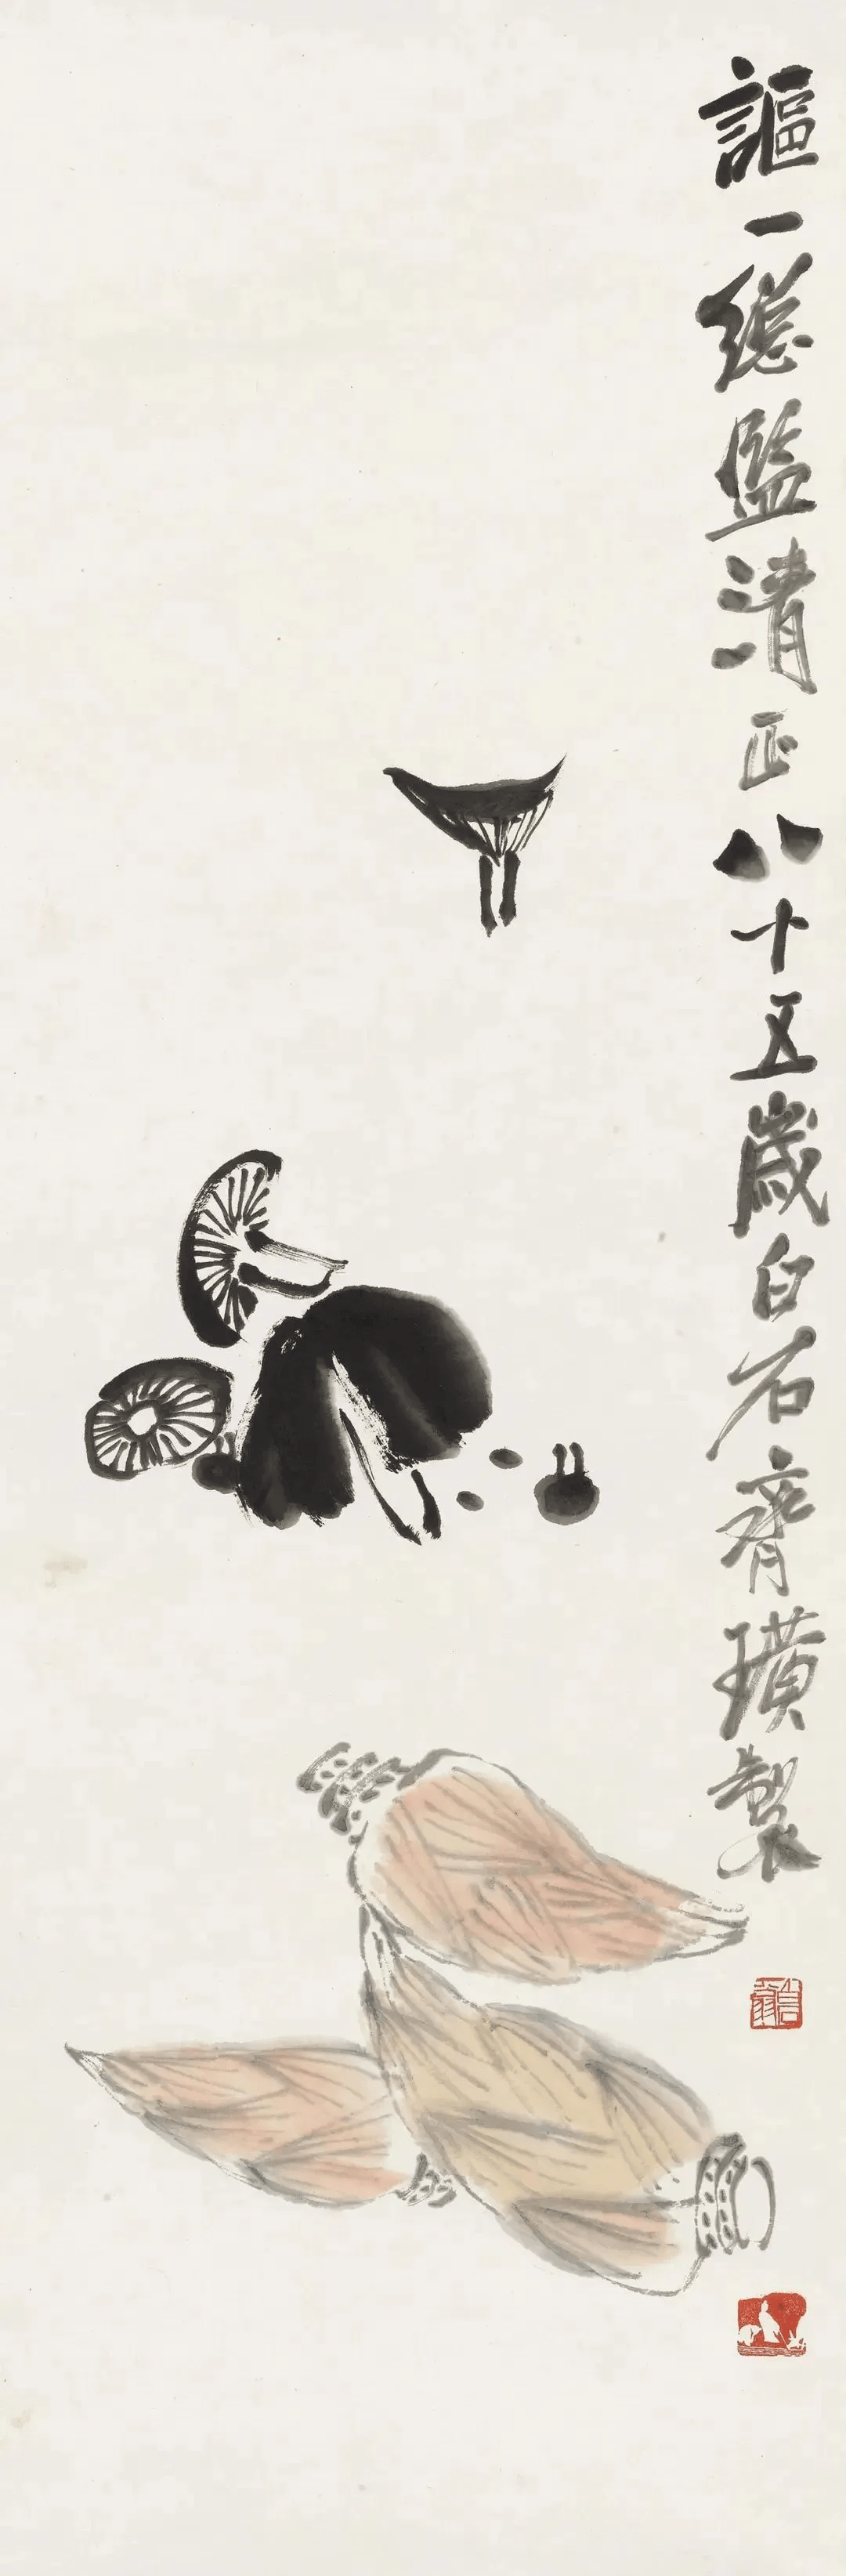 齐白石的花鸟画传承了中国花鸟画艺术传统与审美并加以创新,这种独创